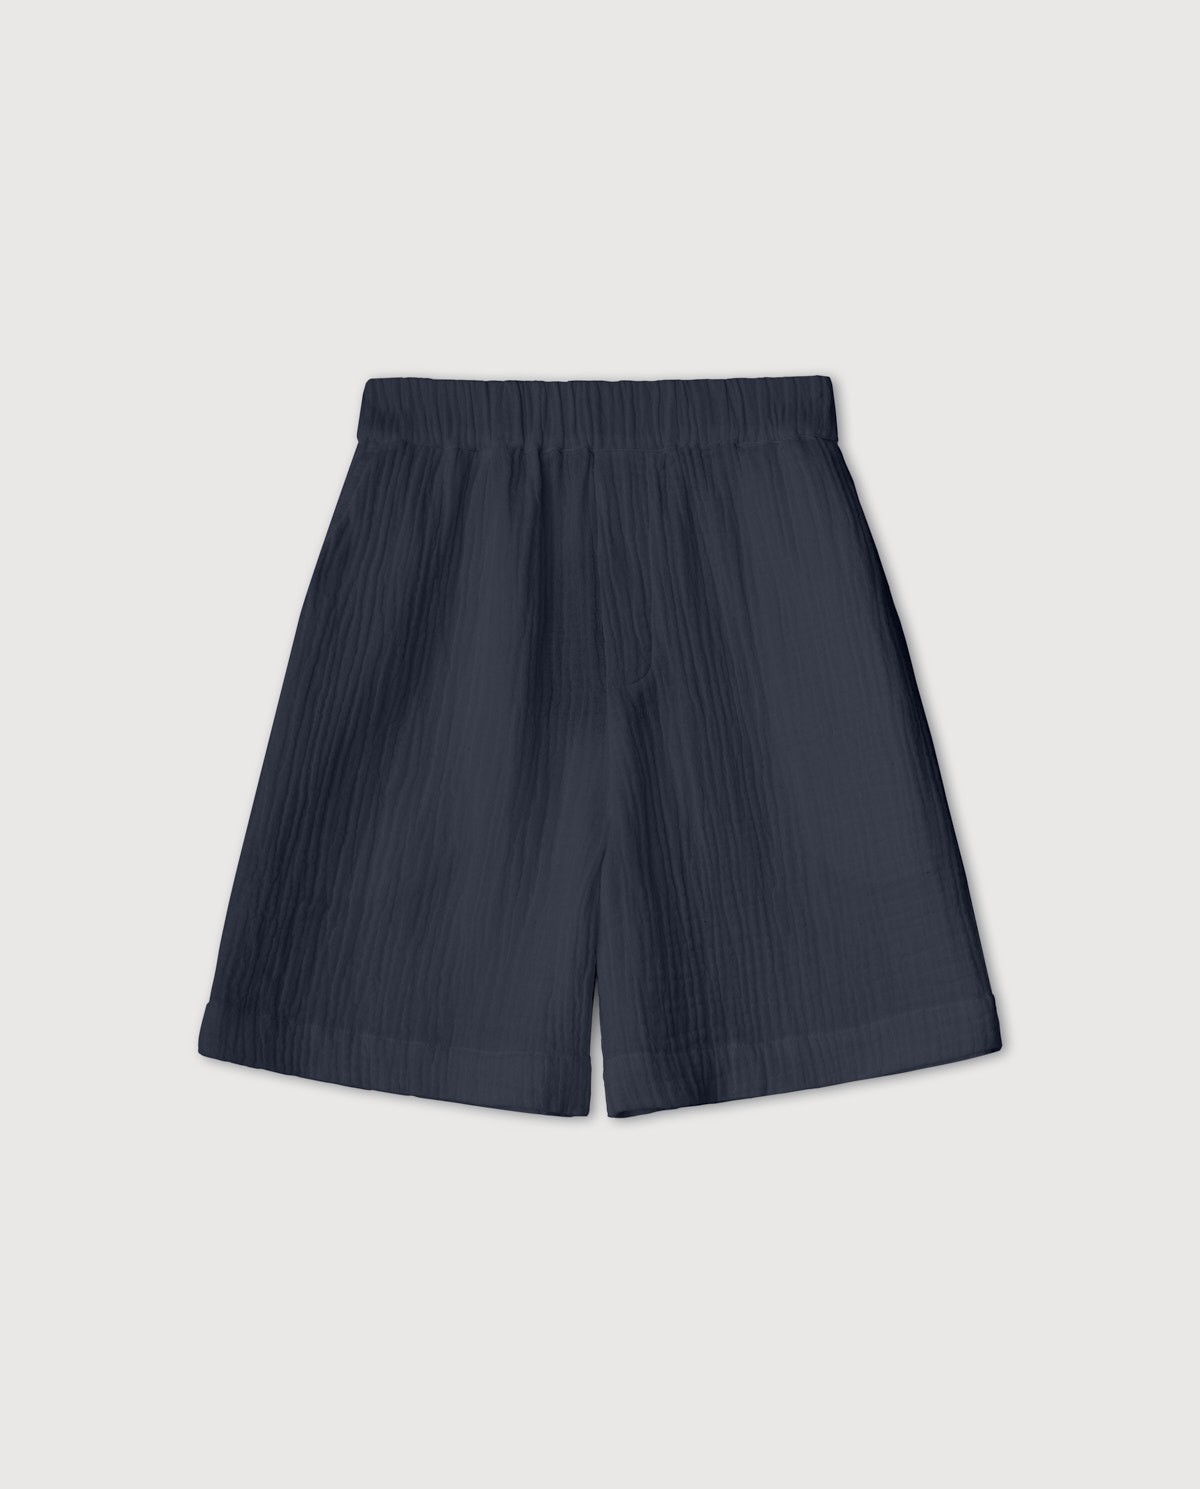 Pantalones cortos 100% algodón Navy 6